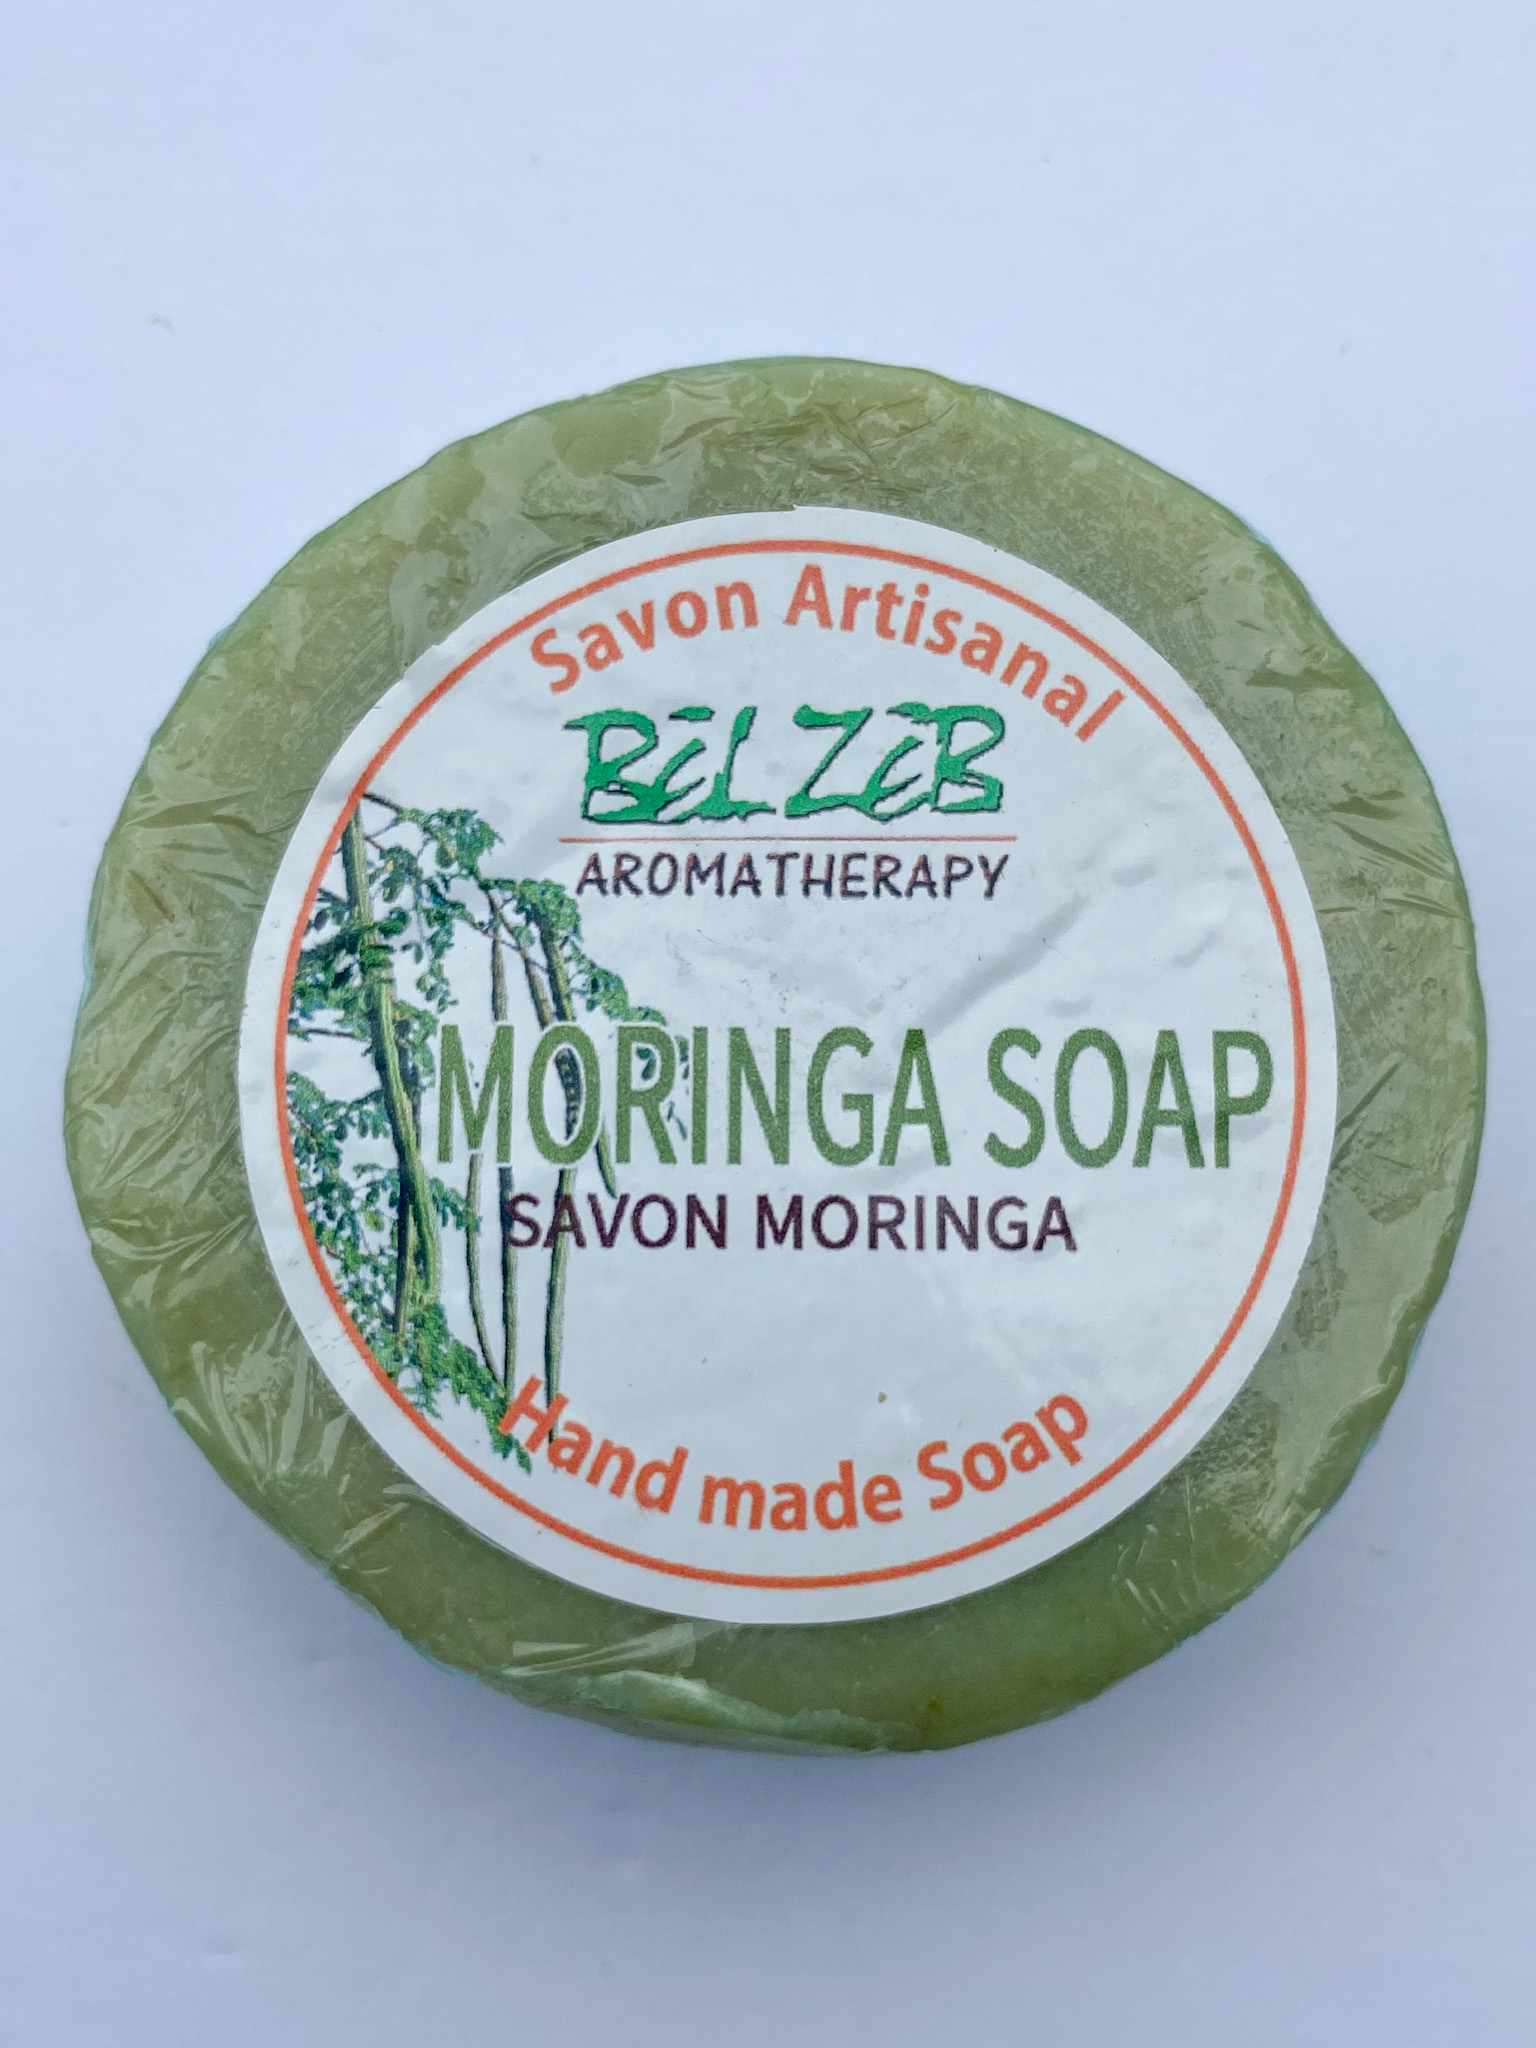 Moringa Soap (Bēl zēb) / Savon Moringa